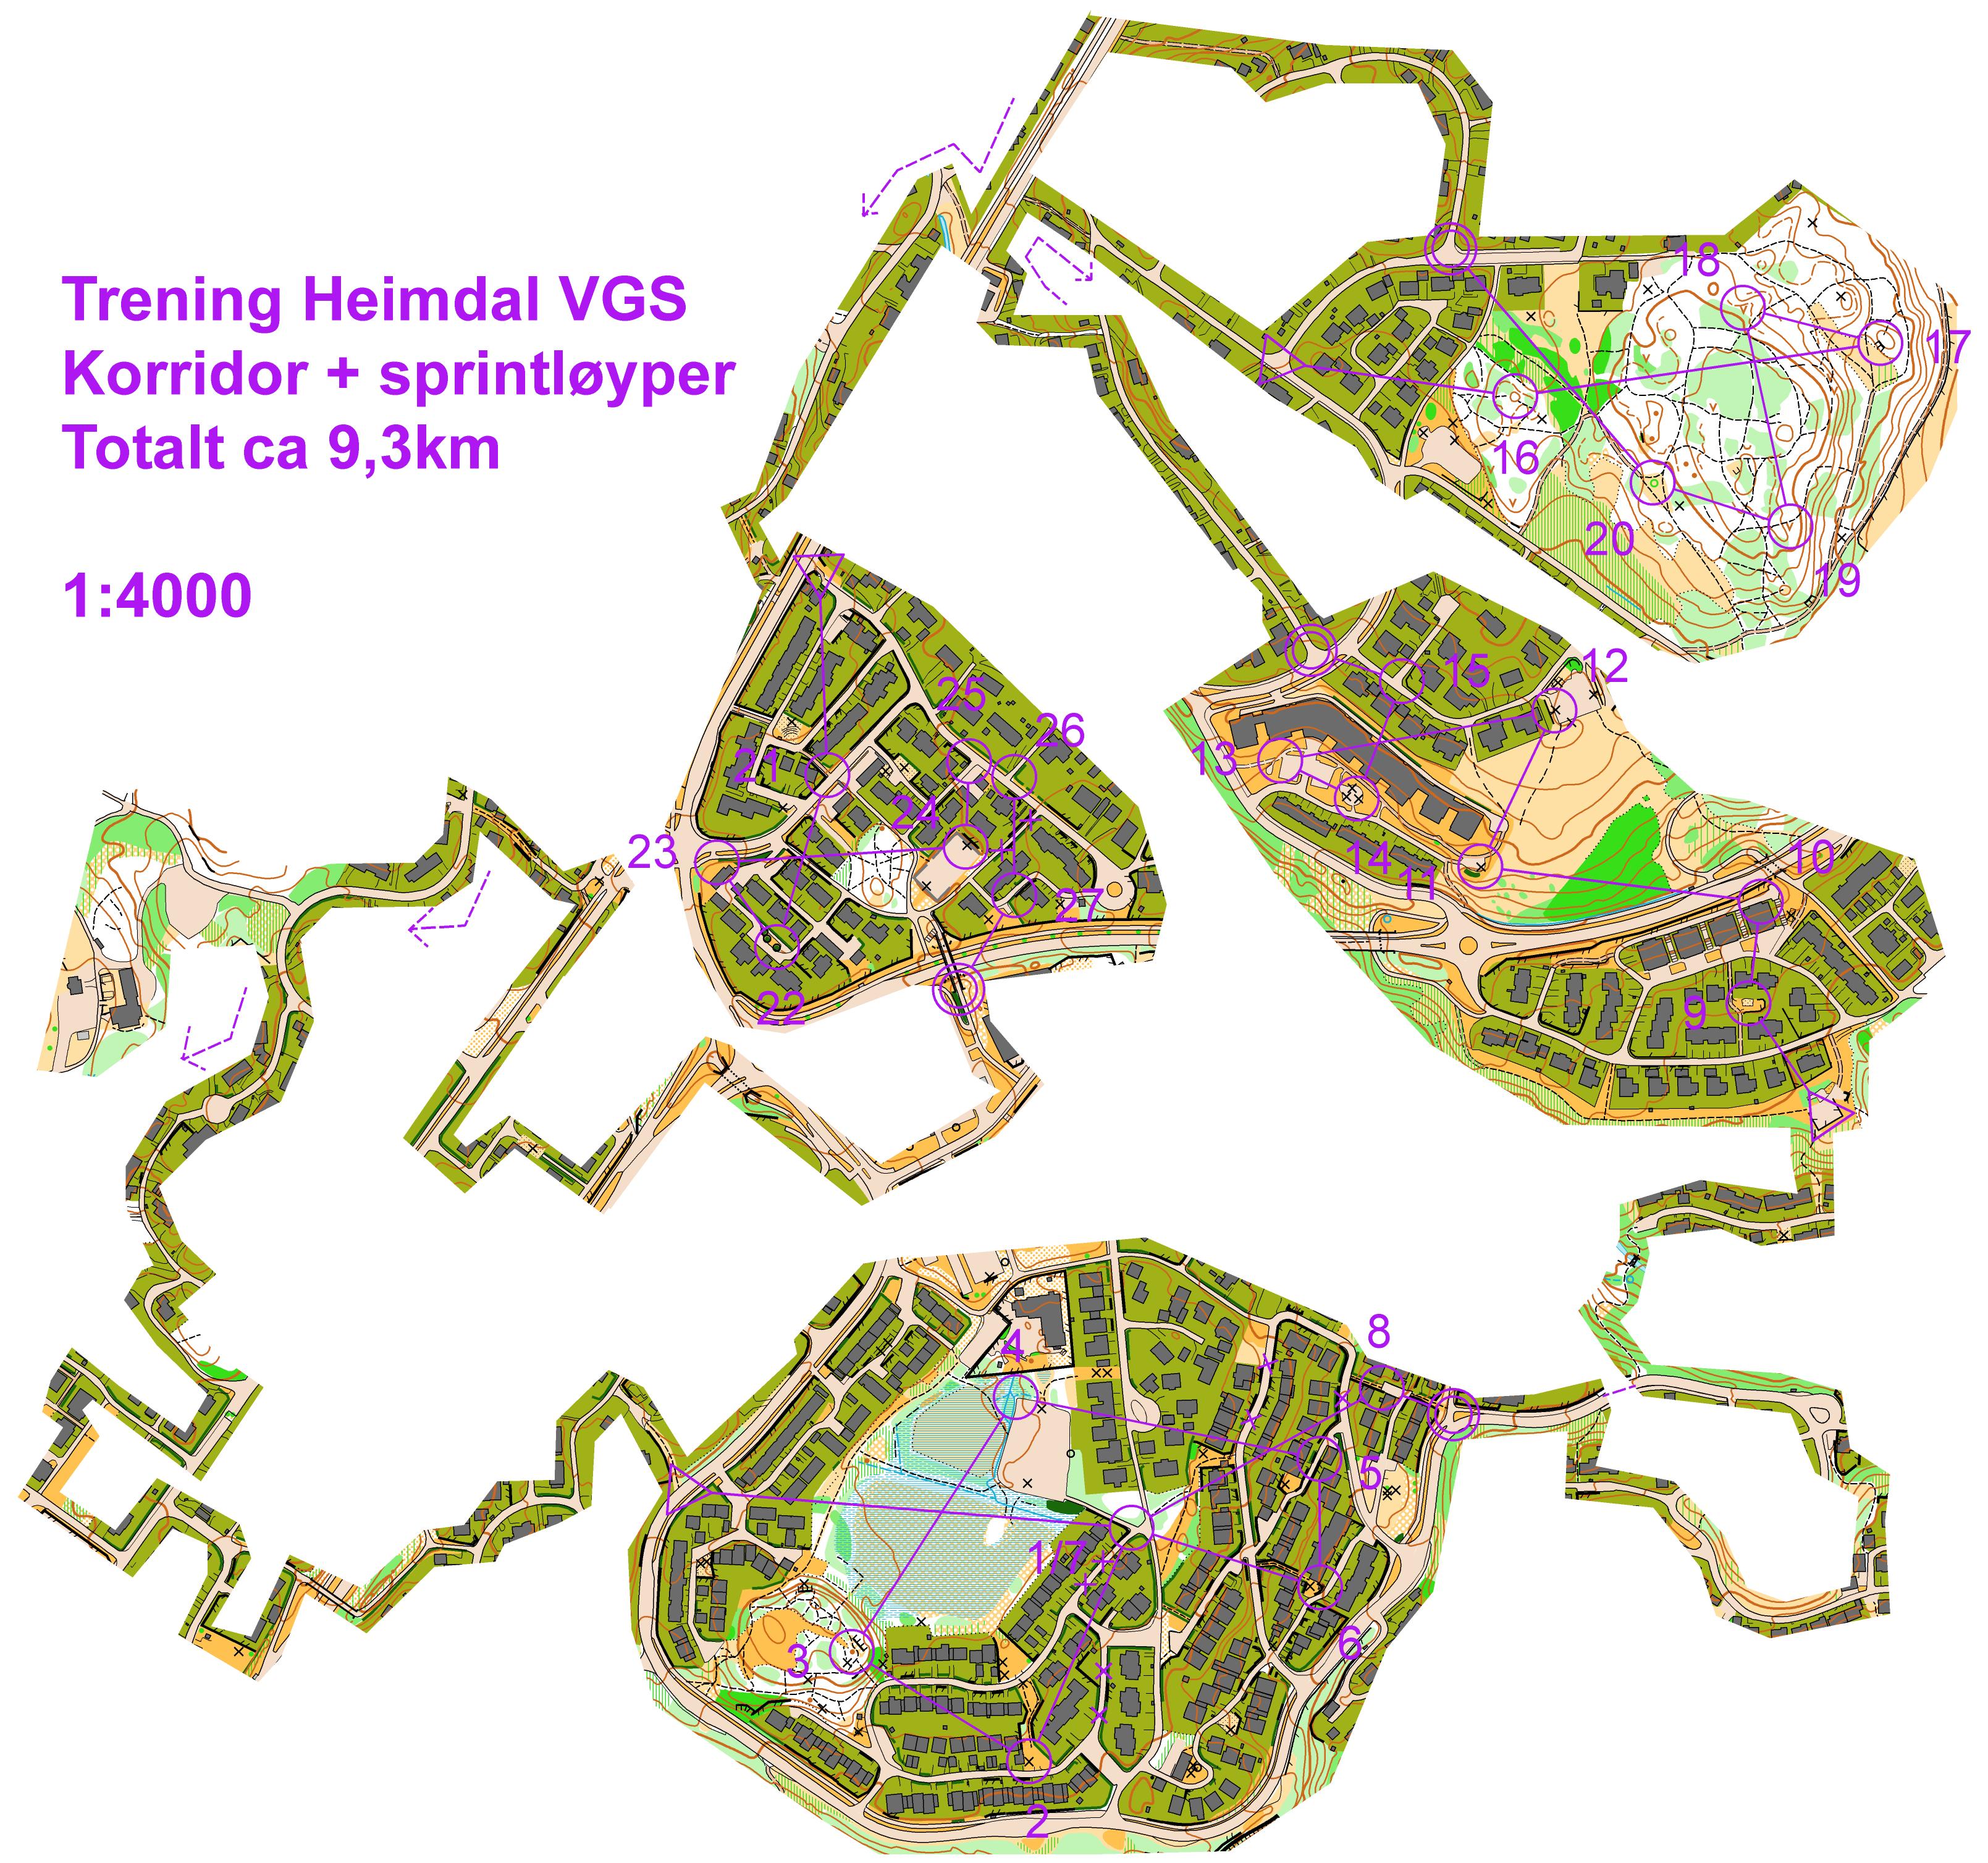 Trening HVGS korridor og sprint (2013-03-05)